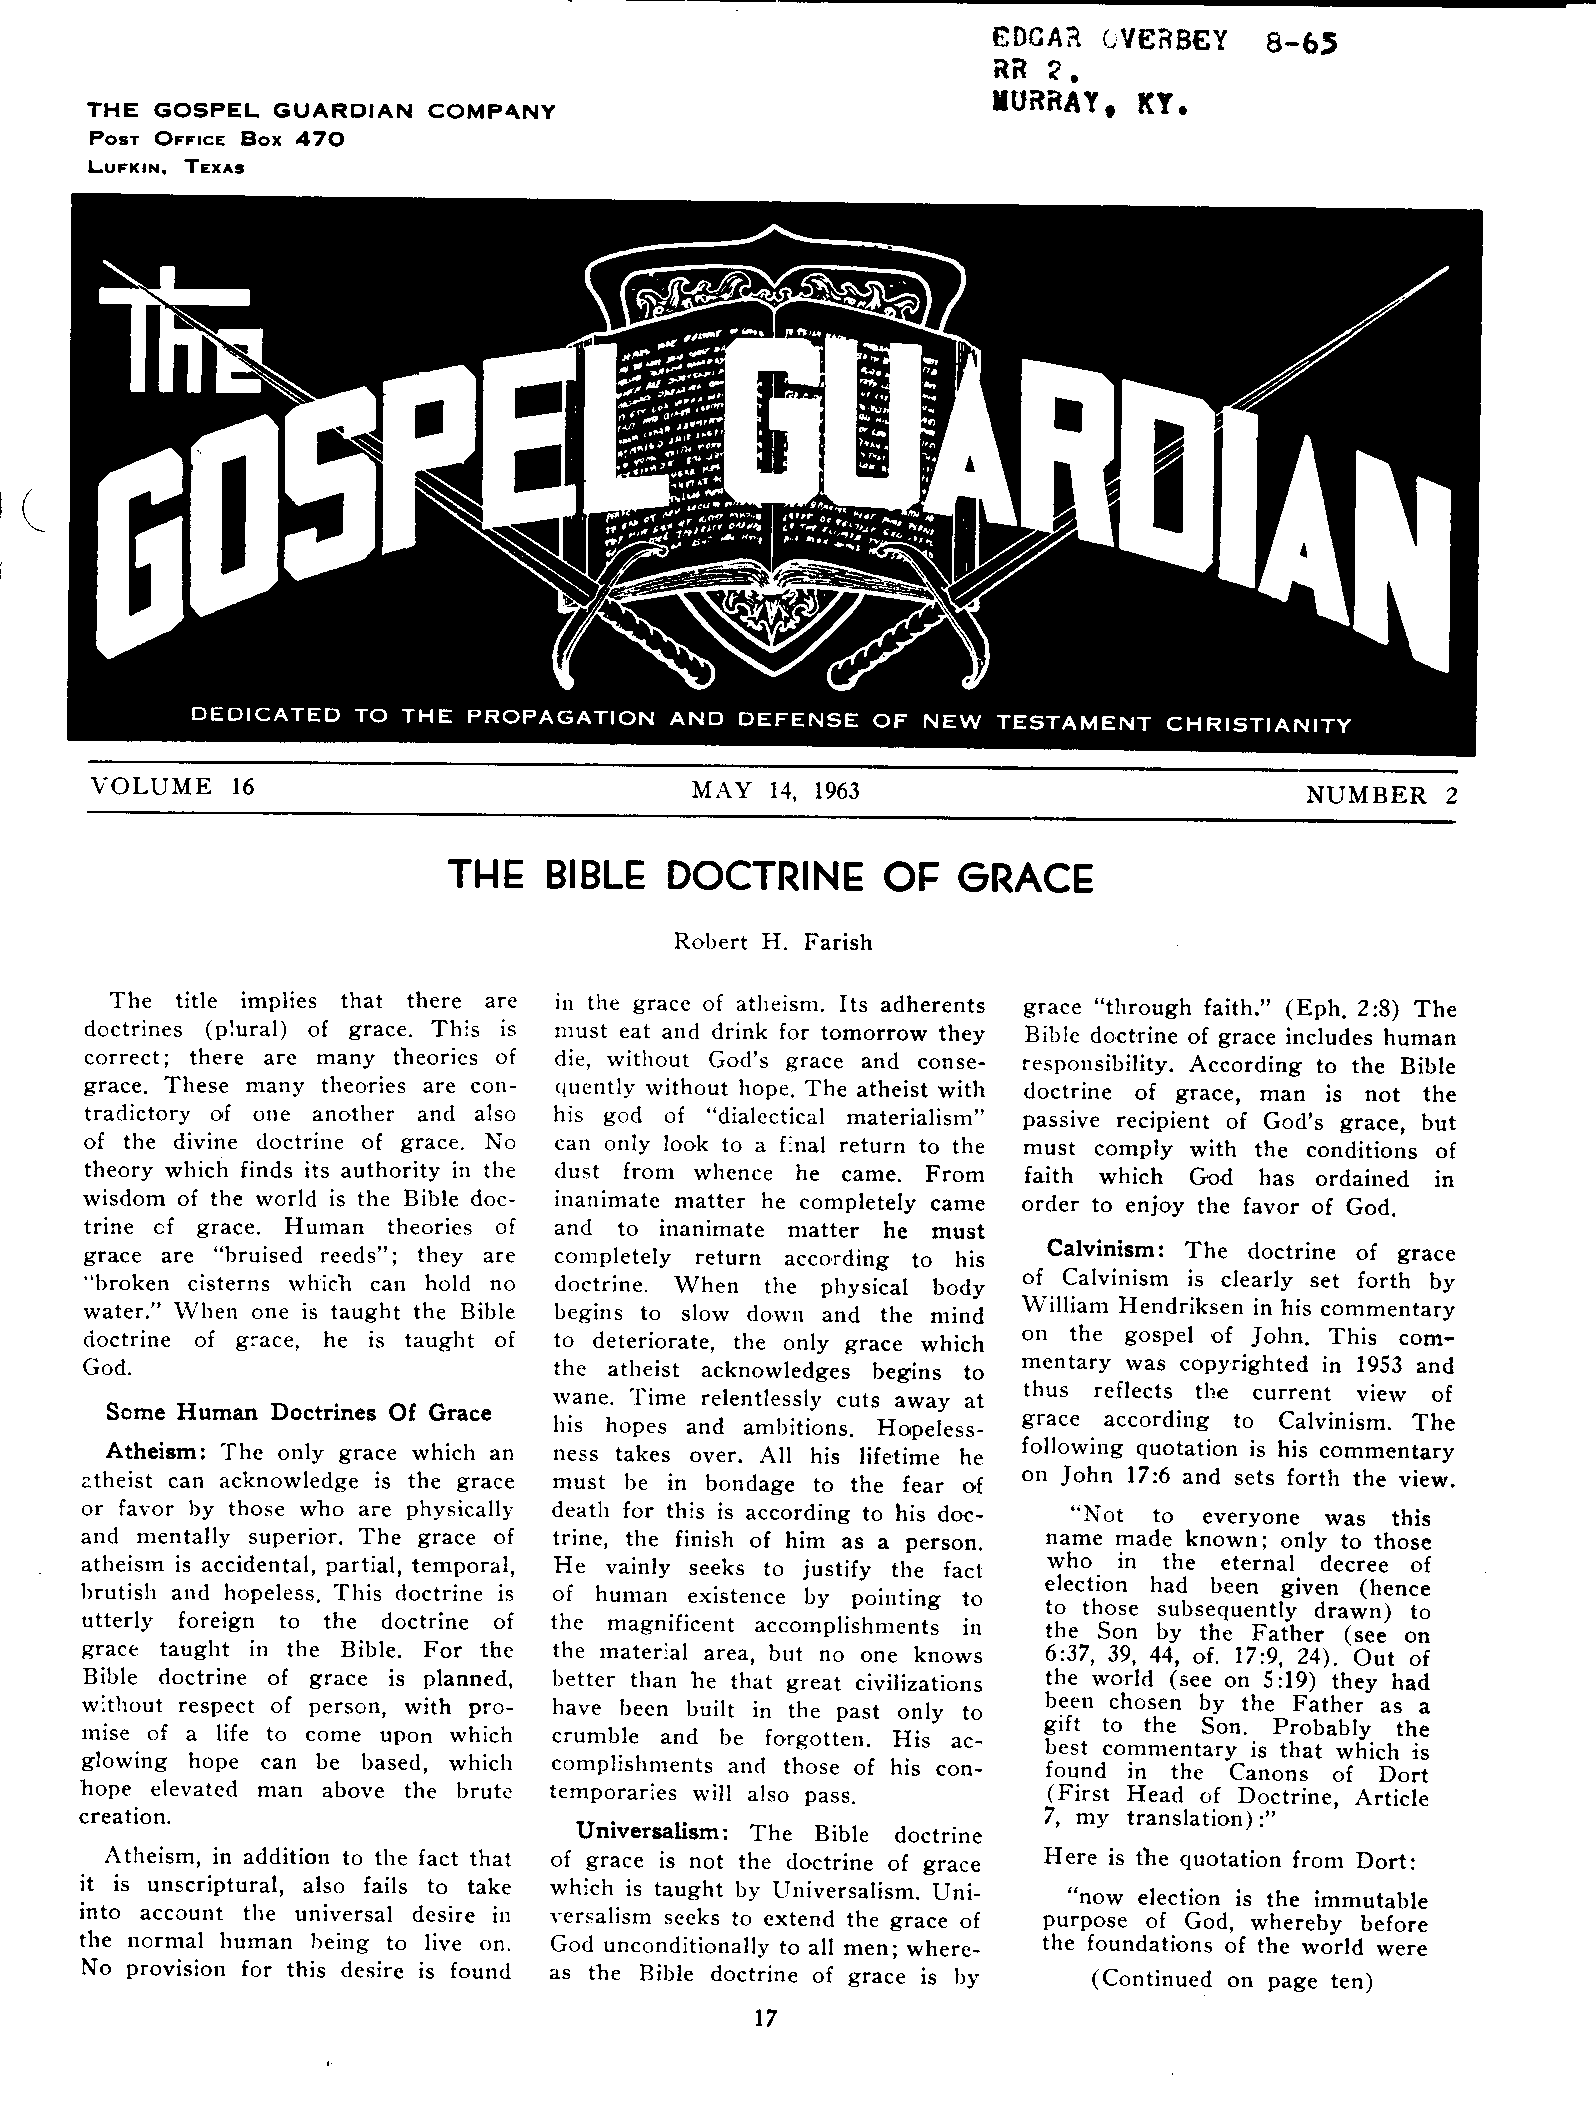 Gospel Guardian Original: Vol.16 No.2 Pg.1